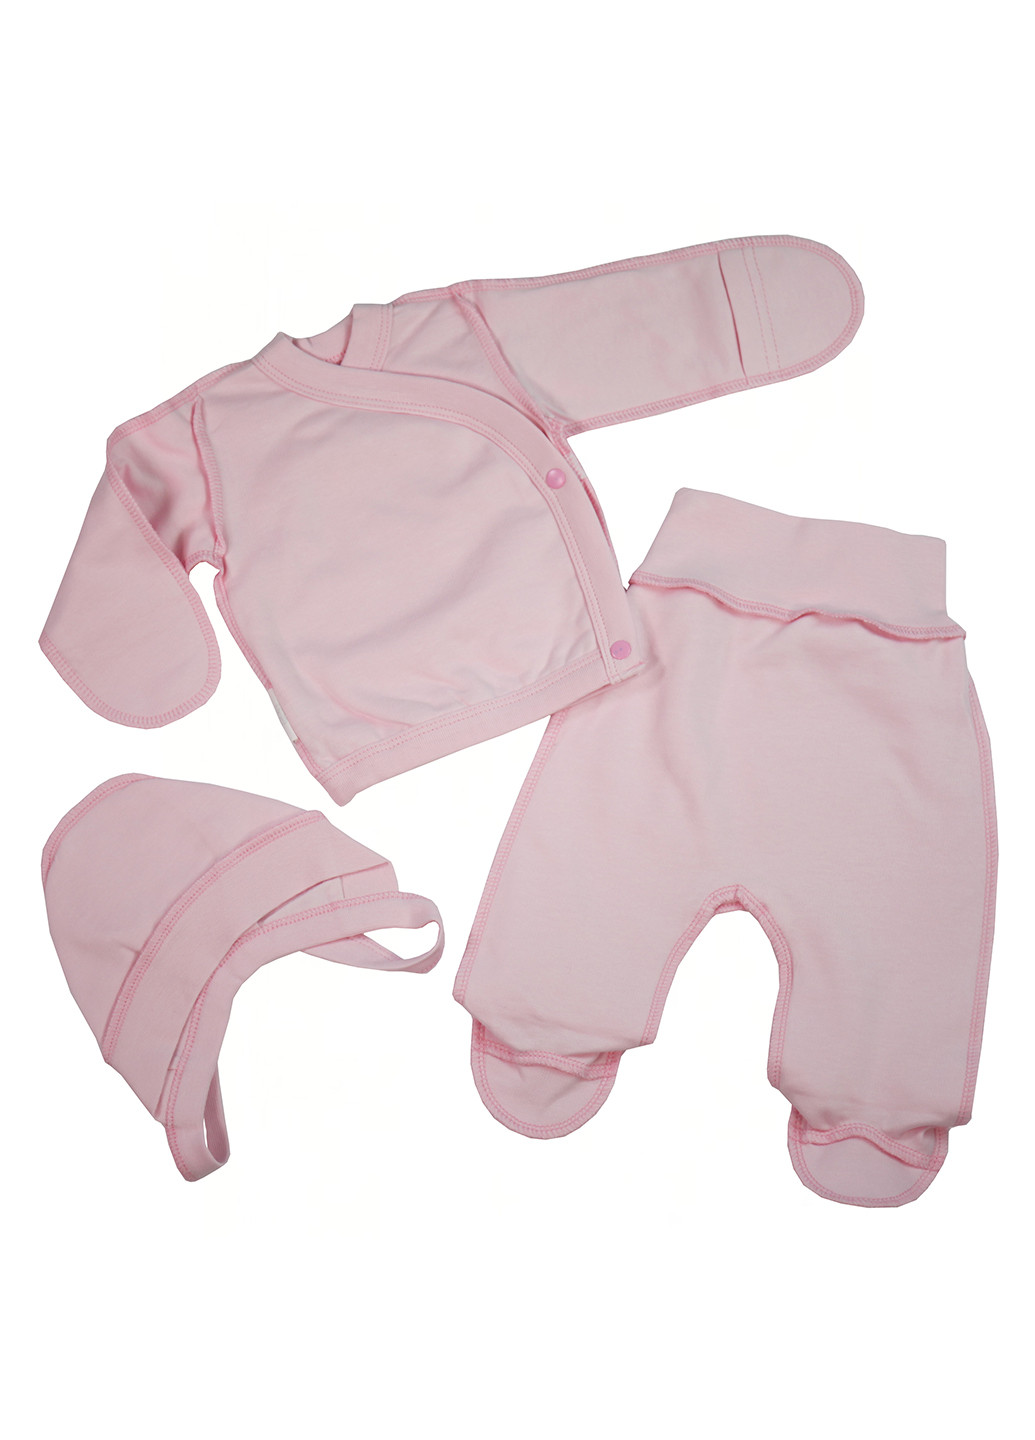 Розовый демисезонный комплект (распашонка, ползунки, шапка) Tobbi